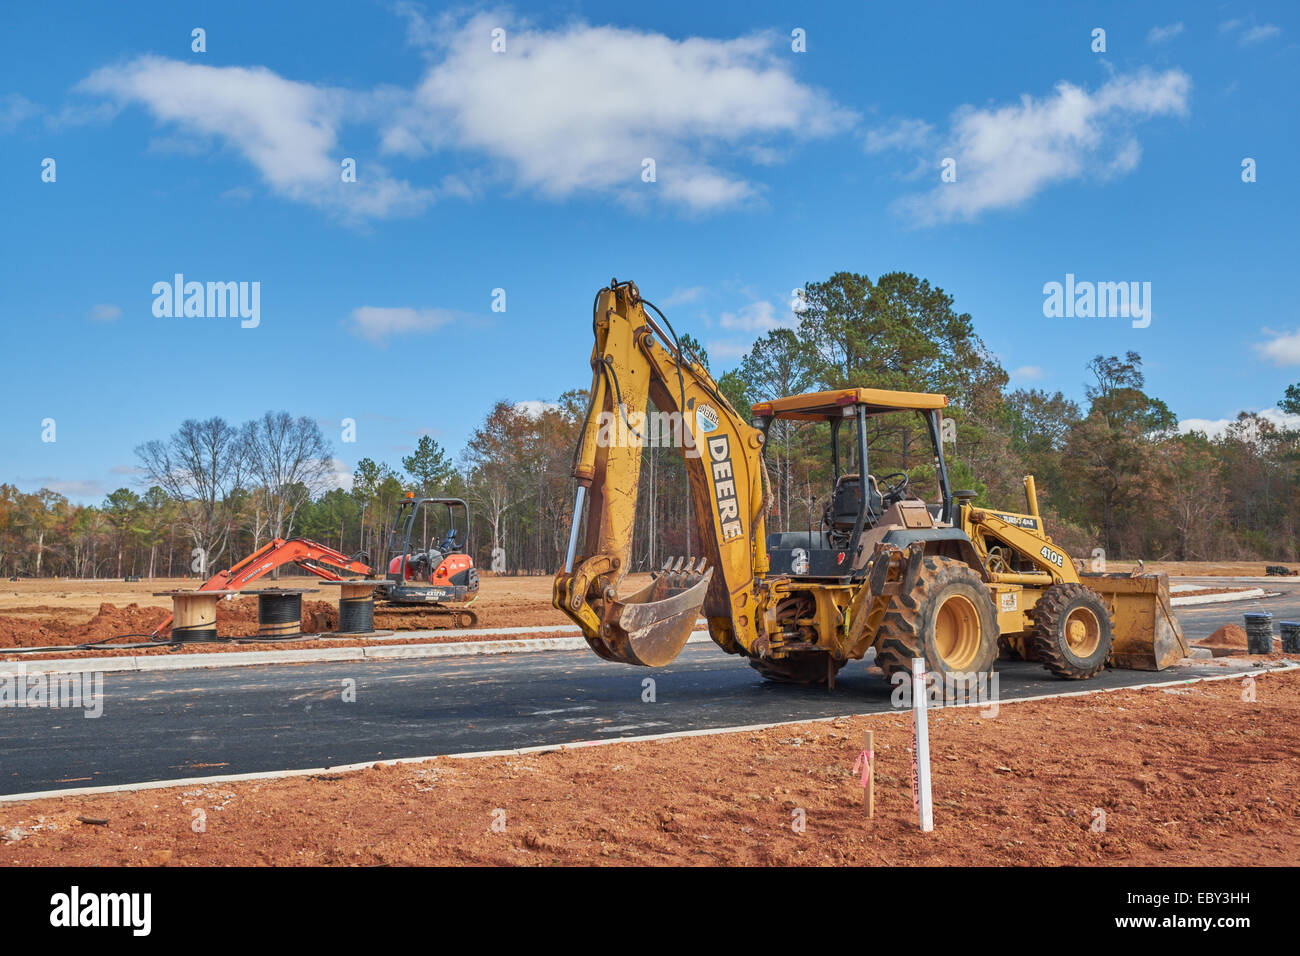 Ein John Deere Tieflöffel/Frontlader im Vordergrund mit einem kleineren Kubota Bagger im Hintergrund auf einer Baustelle, Hecht Straße, Alabama, USA. Stockfoto